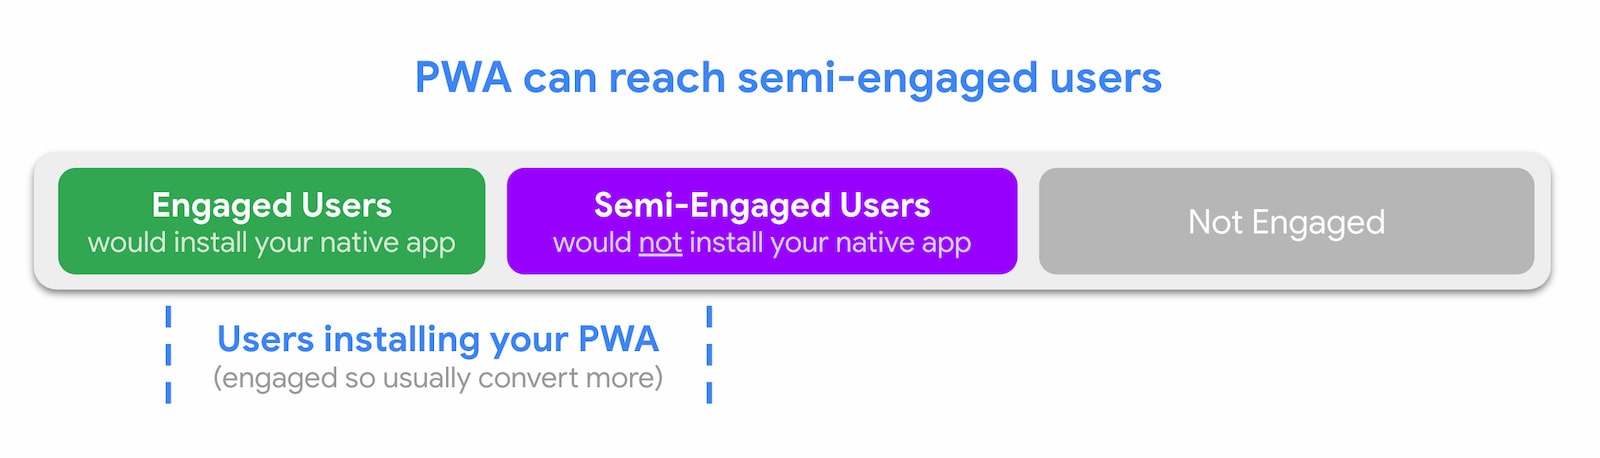 PWA mogą docierać do użytkowników częściowo zaangażowanych.